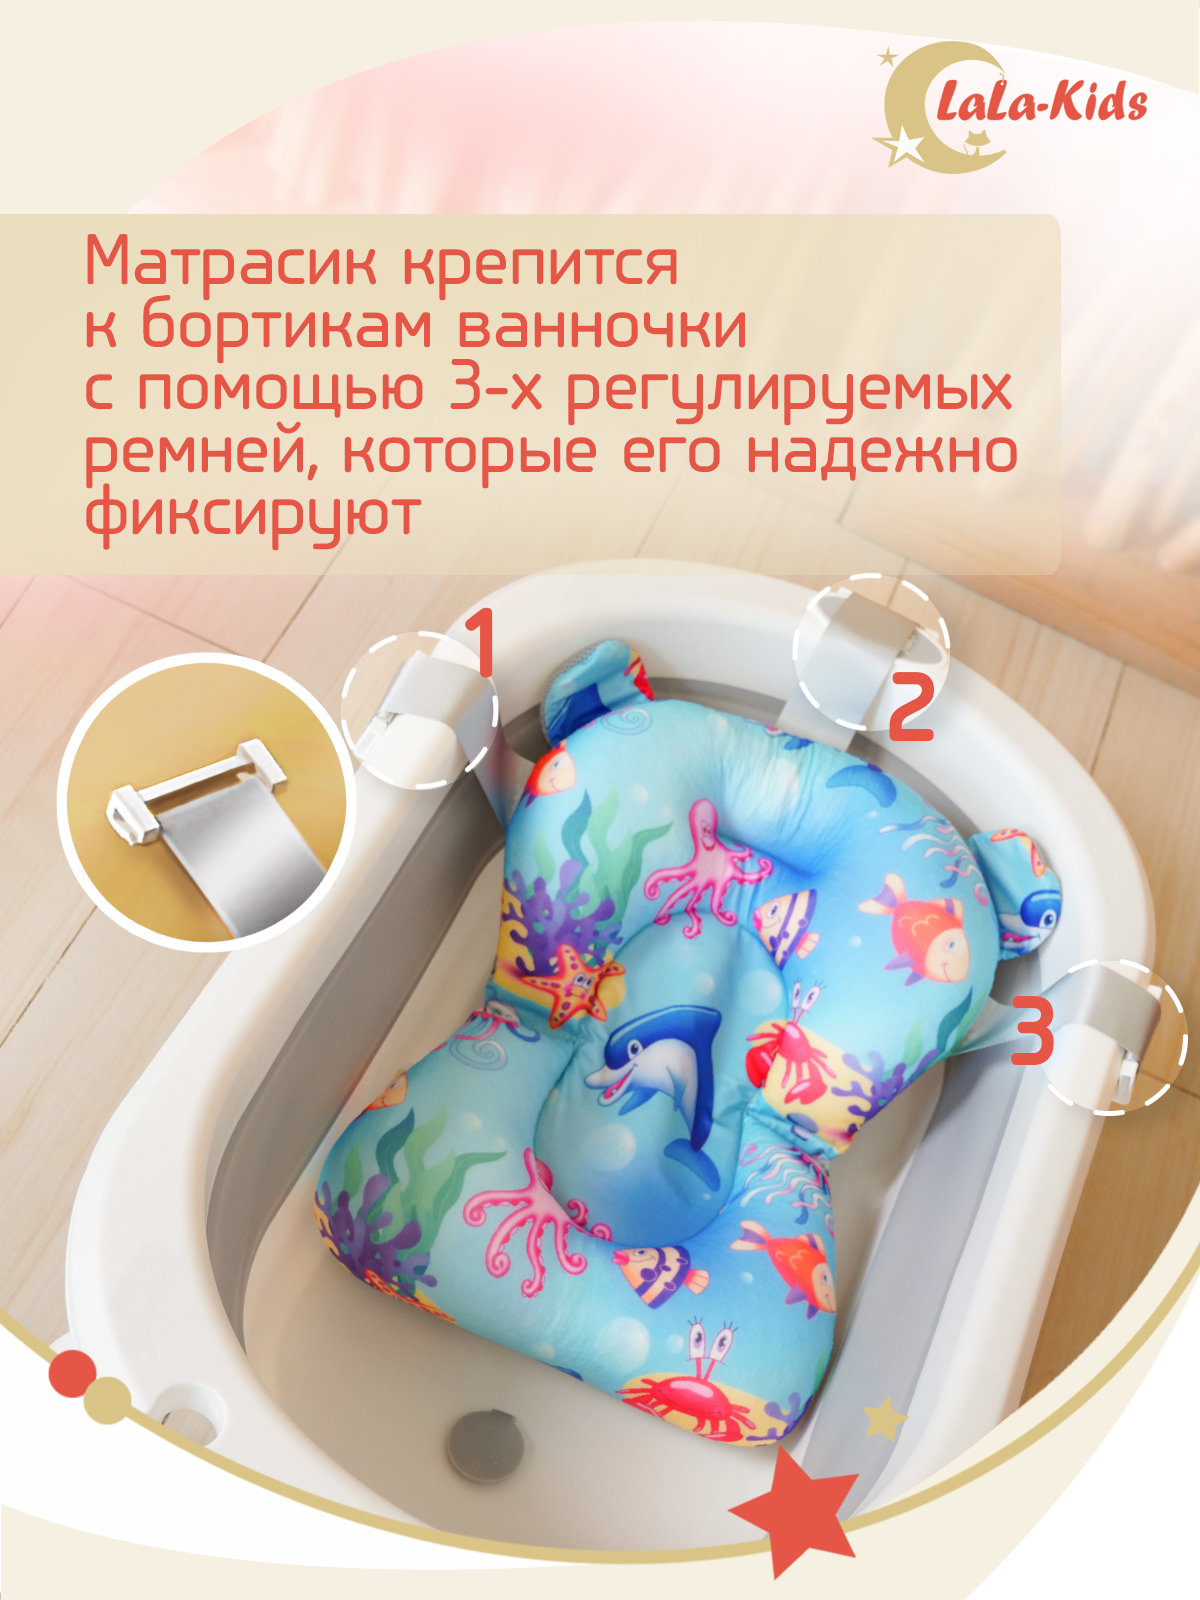 Детская ванночка с термометром LaLa-Kids складная с матрасиком для купания новорожденных - фото 14